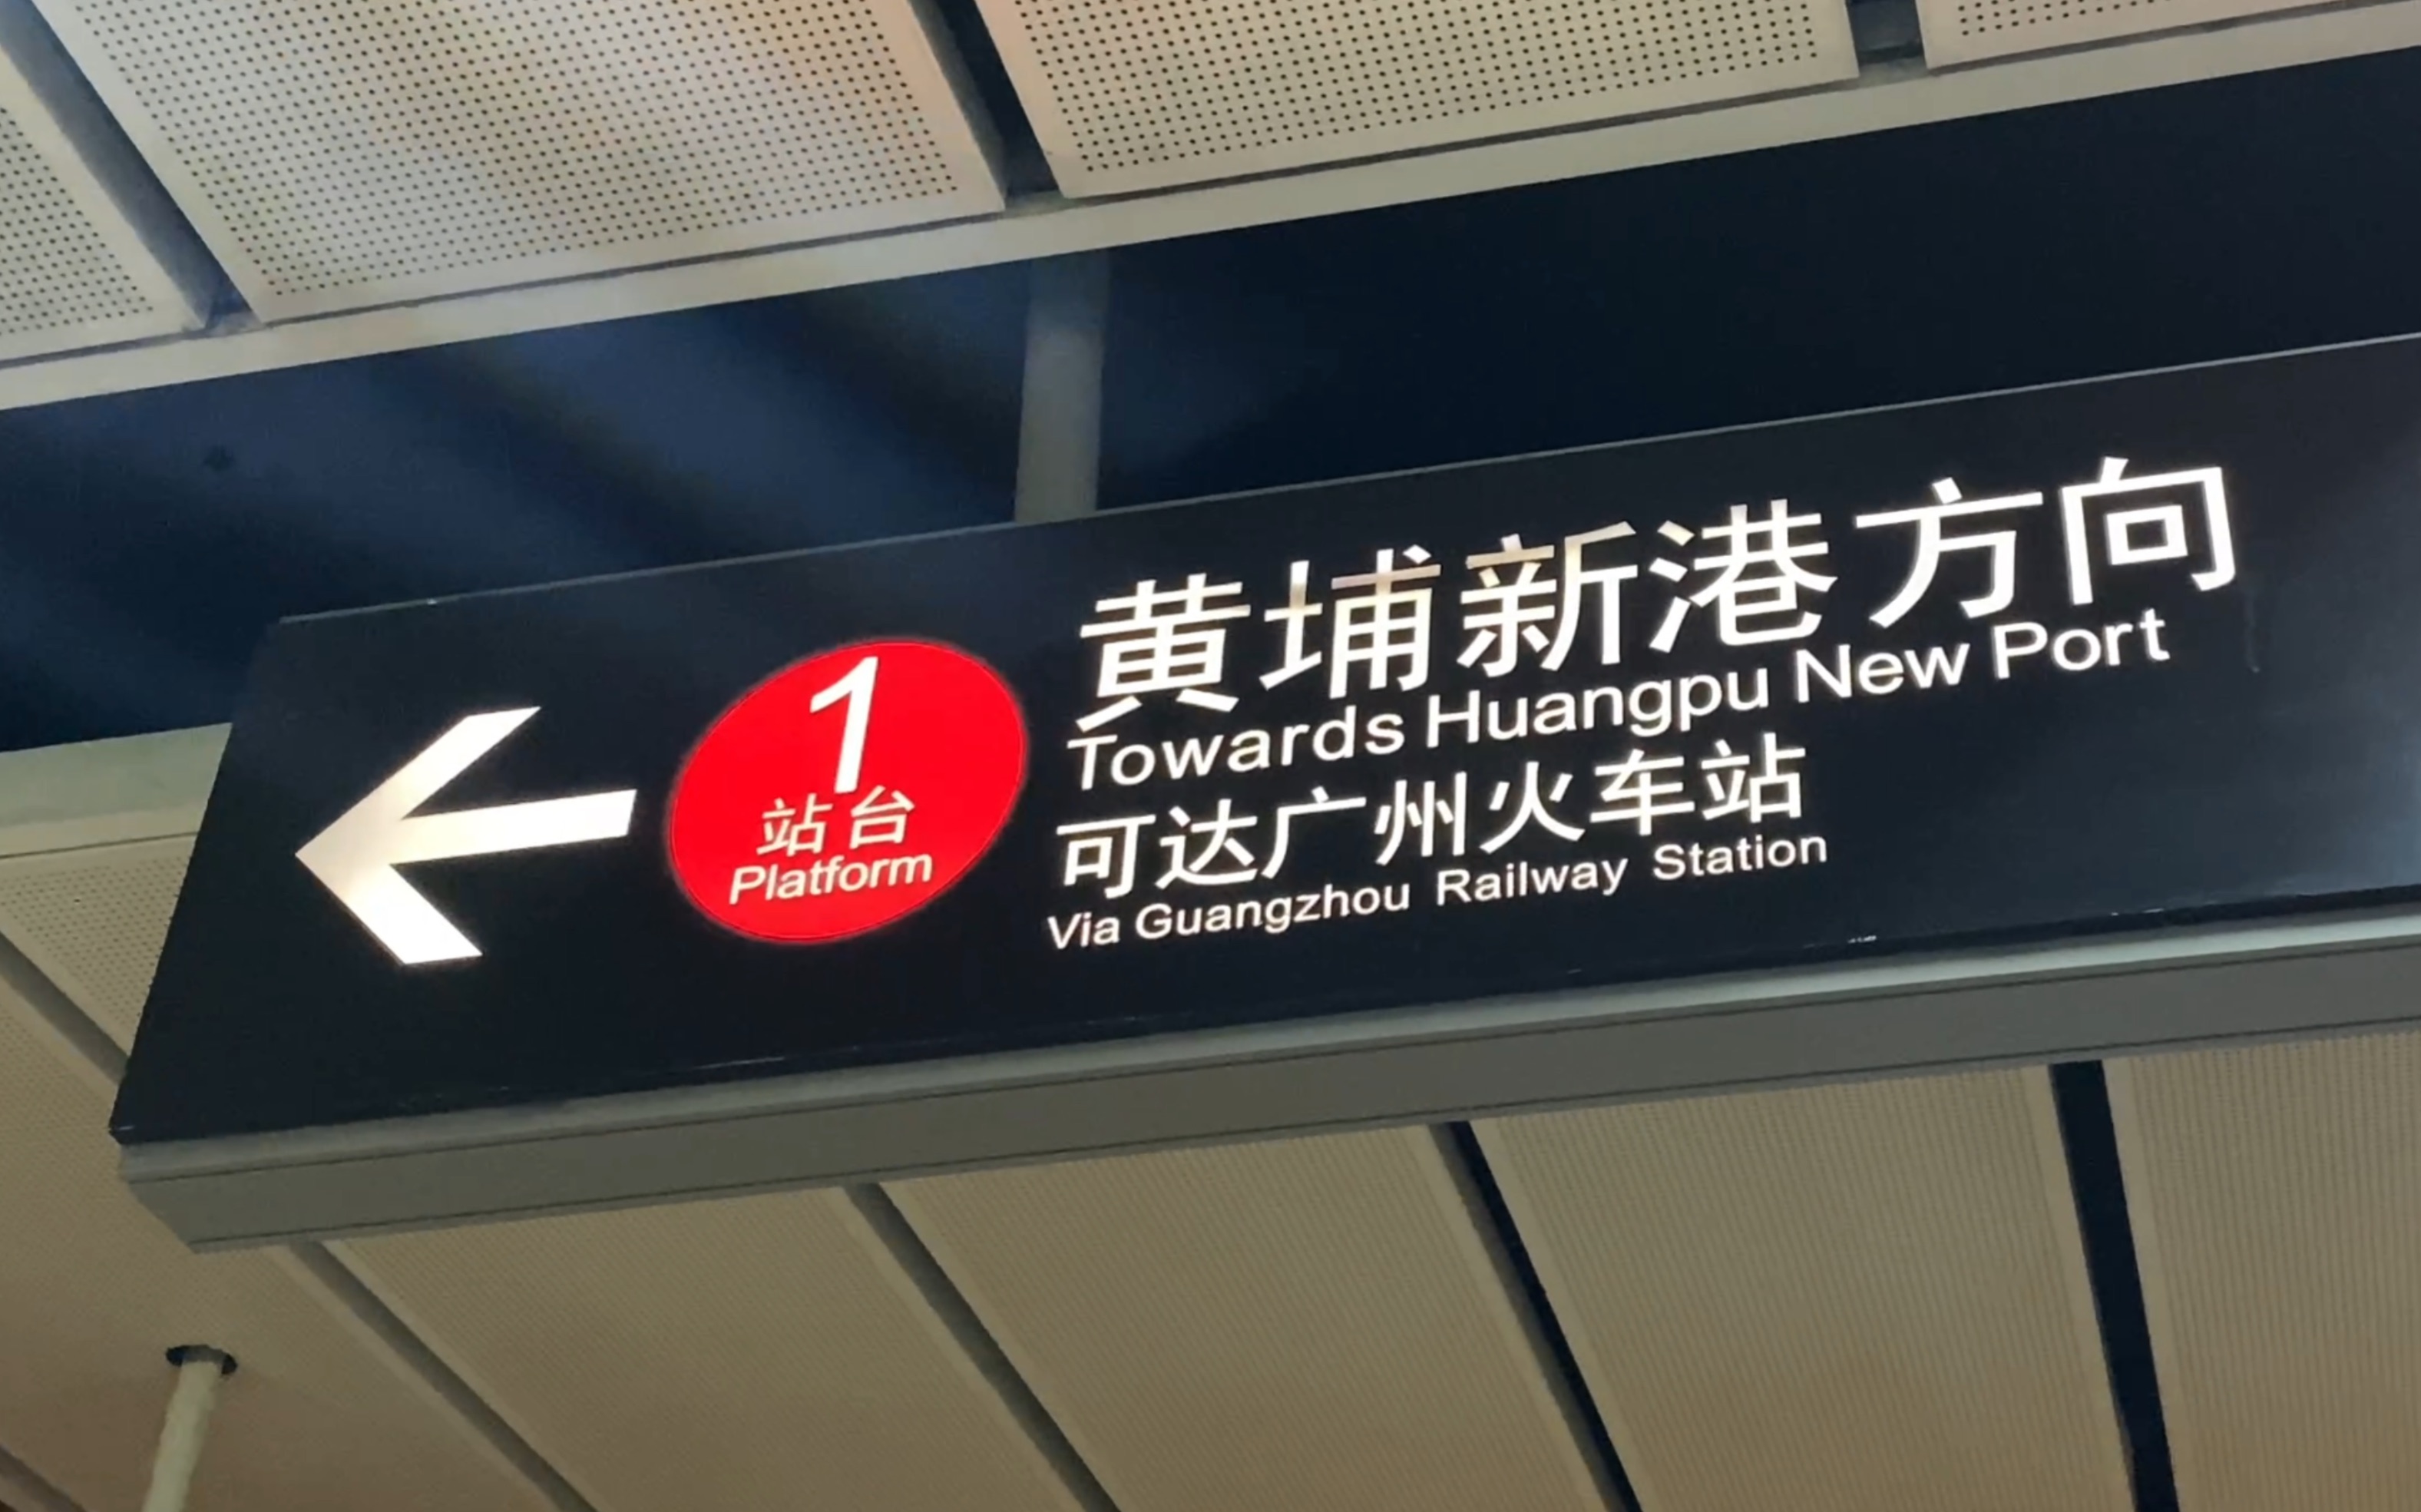 广州地铁站标识图片